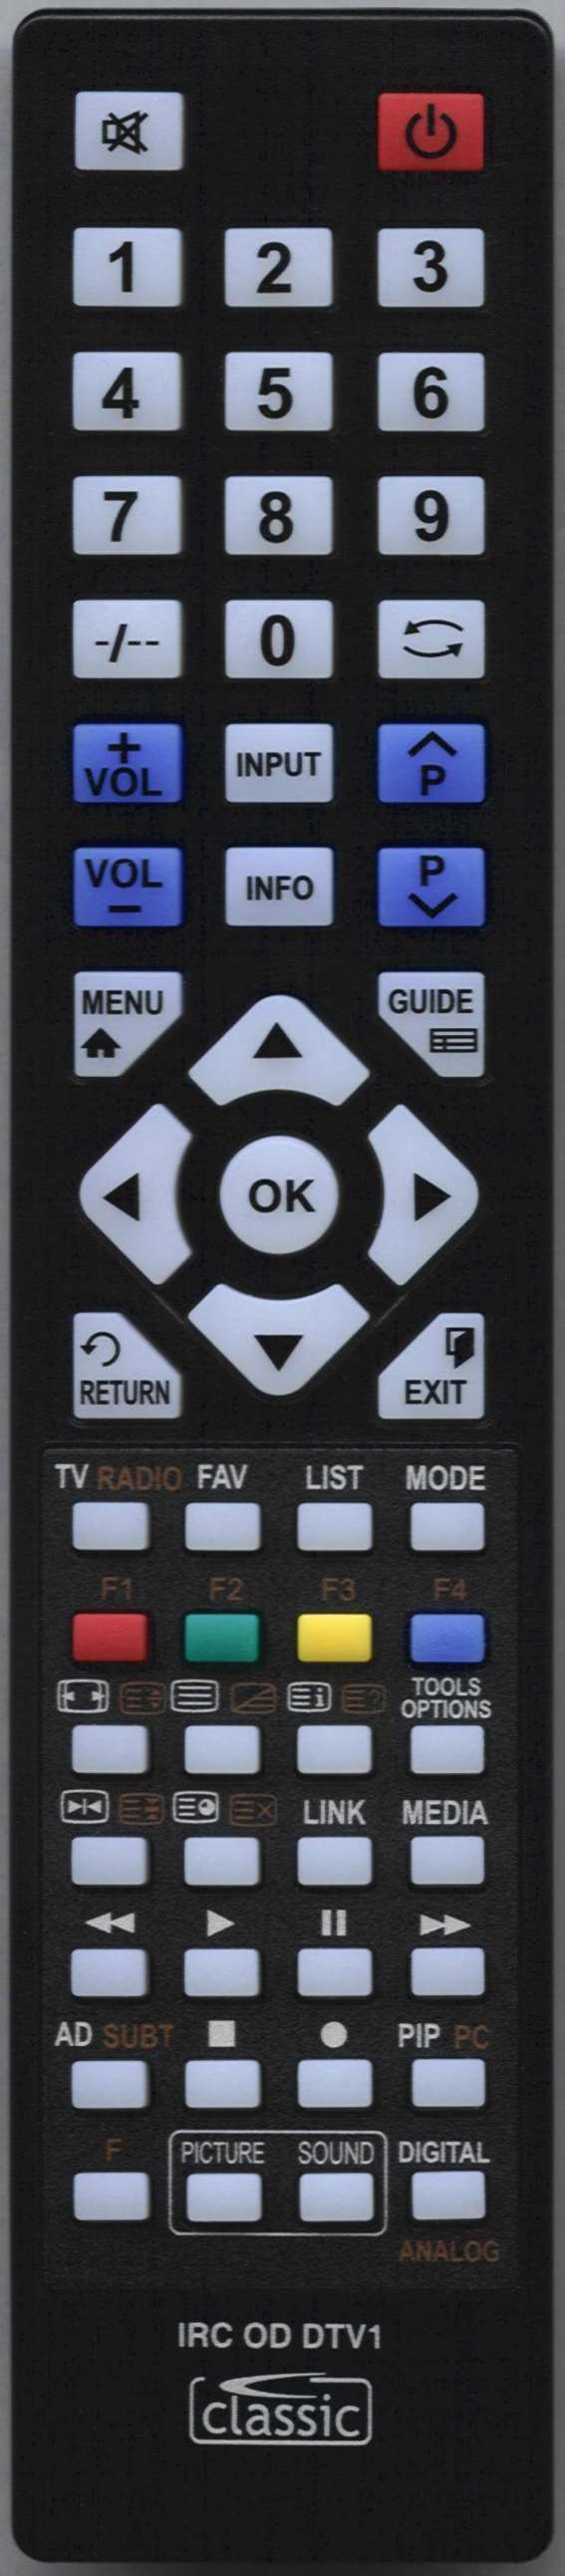 LUXOR 10060014 Remote Control Alternative